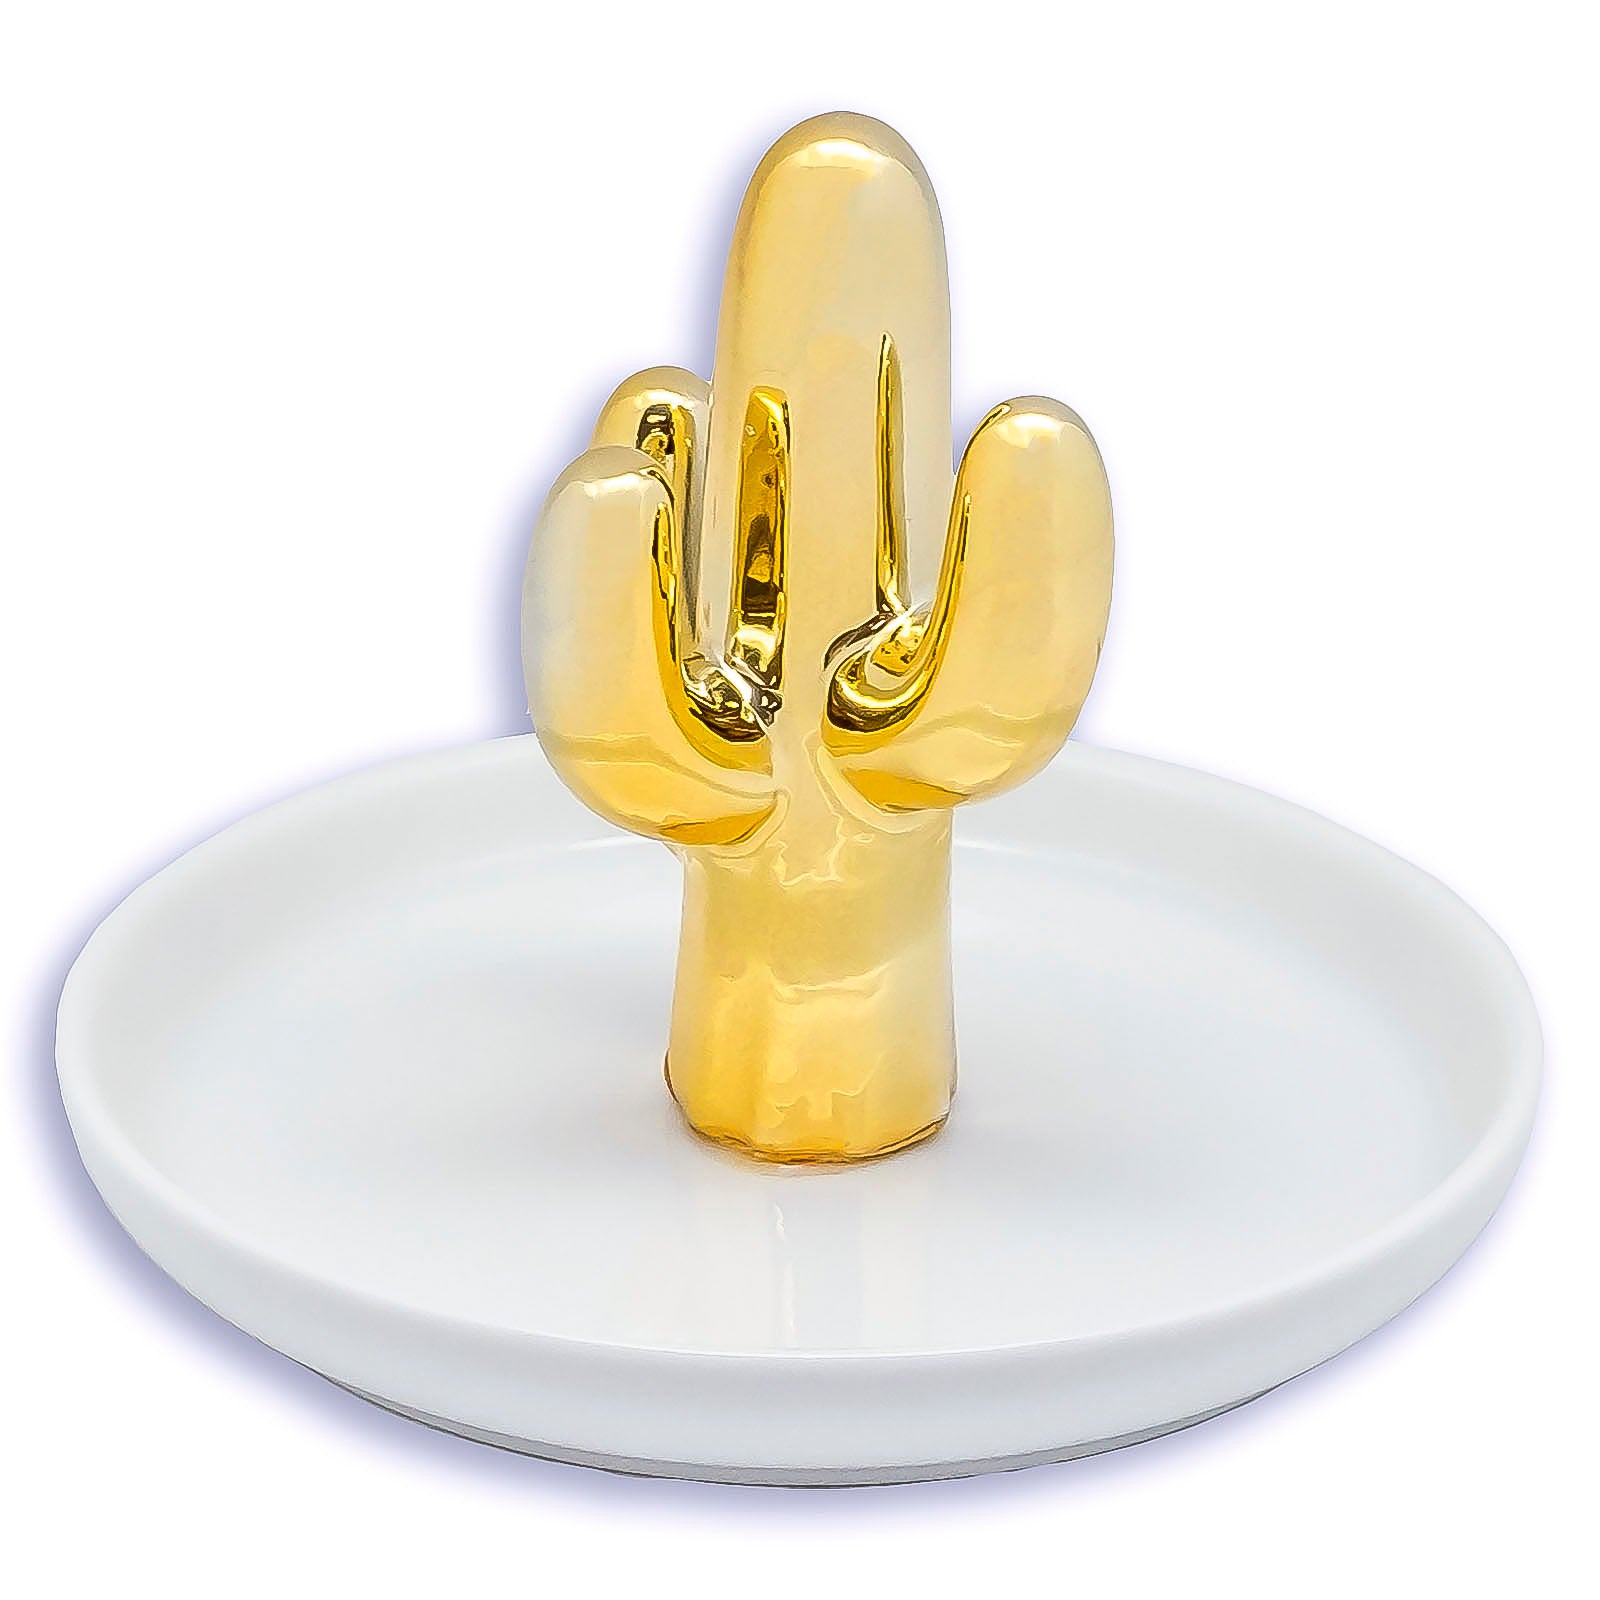 Ceramic Gold Cactus Jewelry Dish